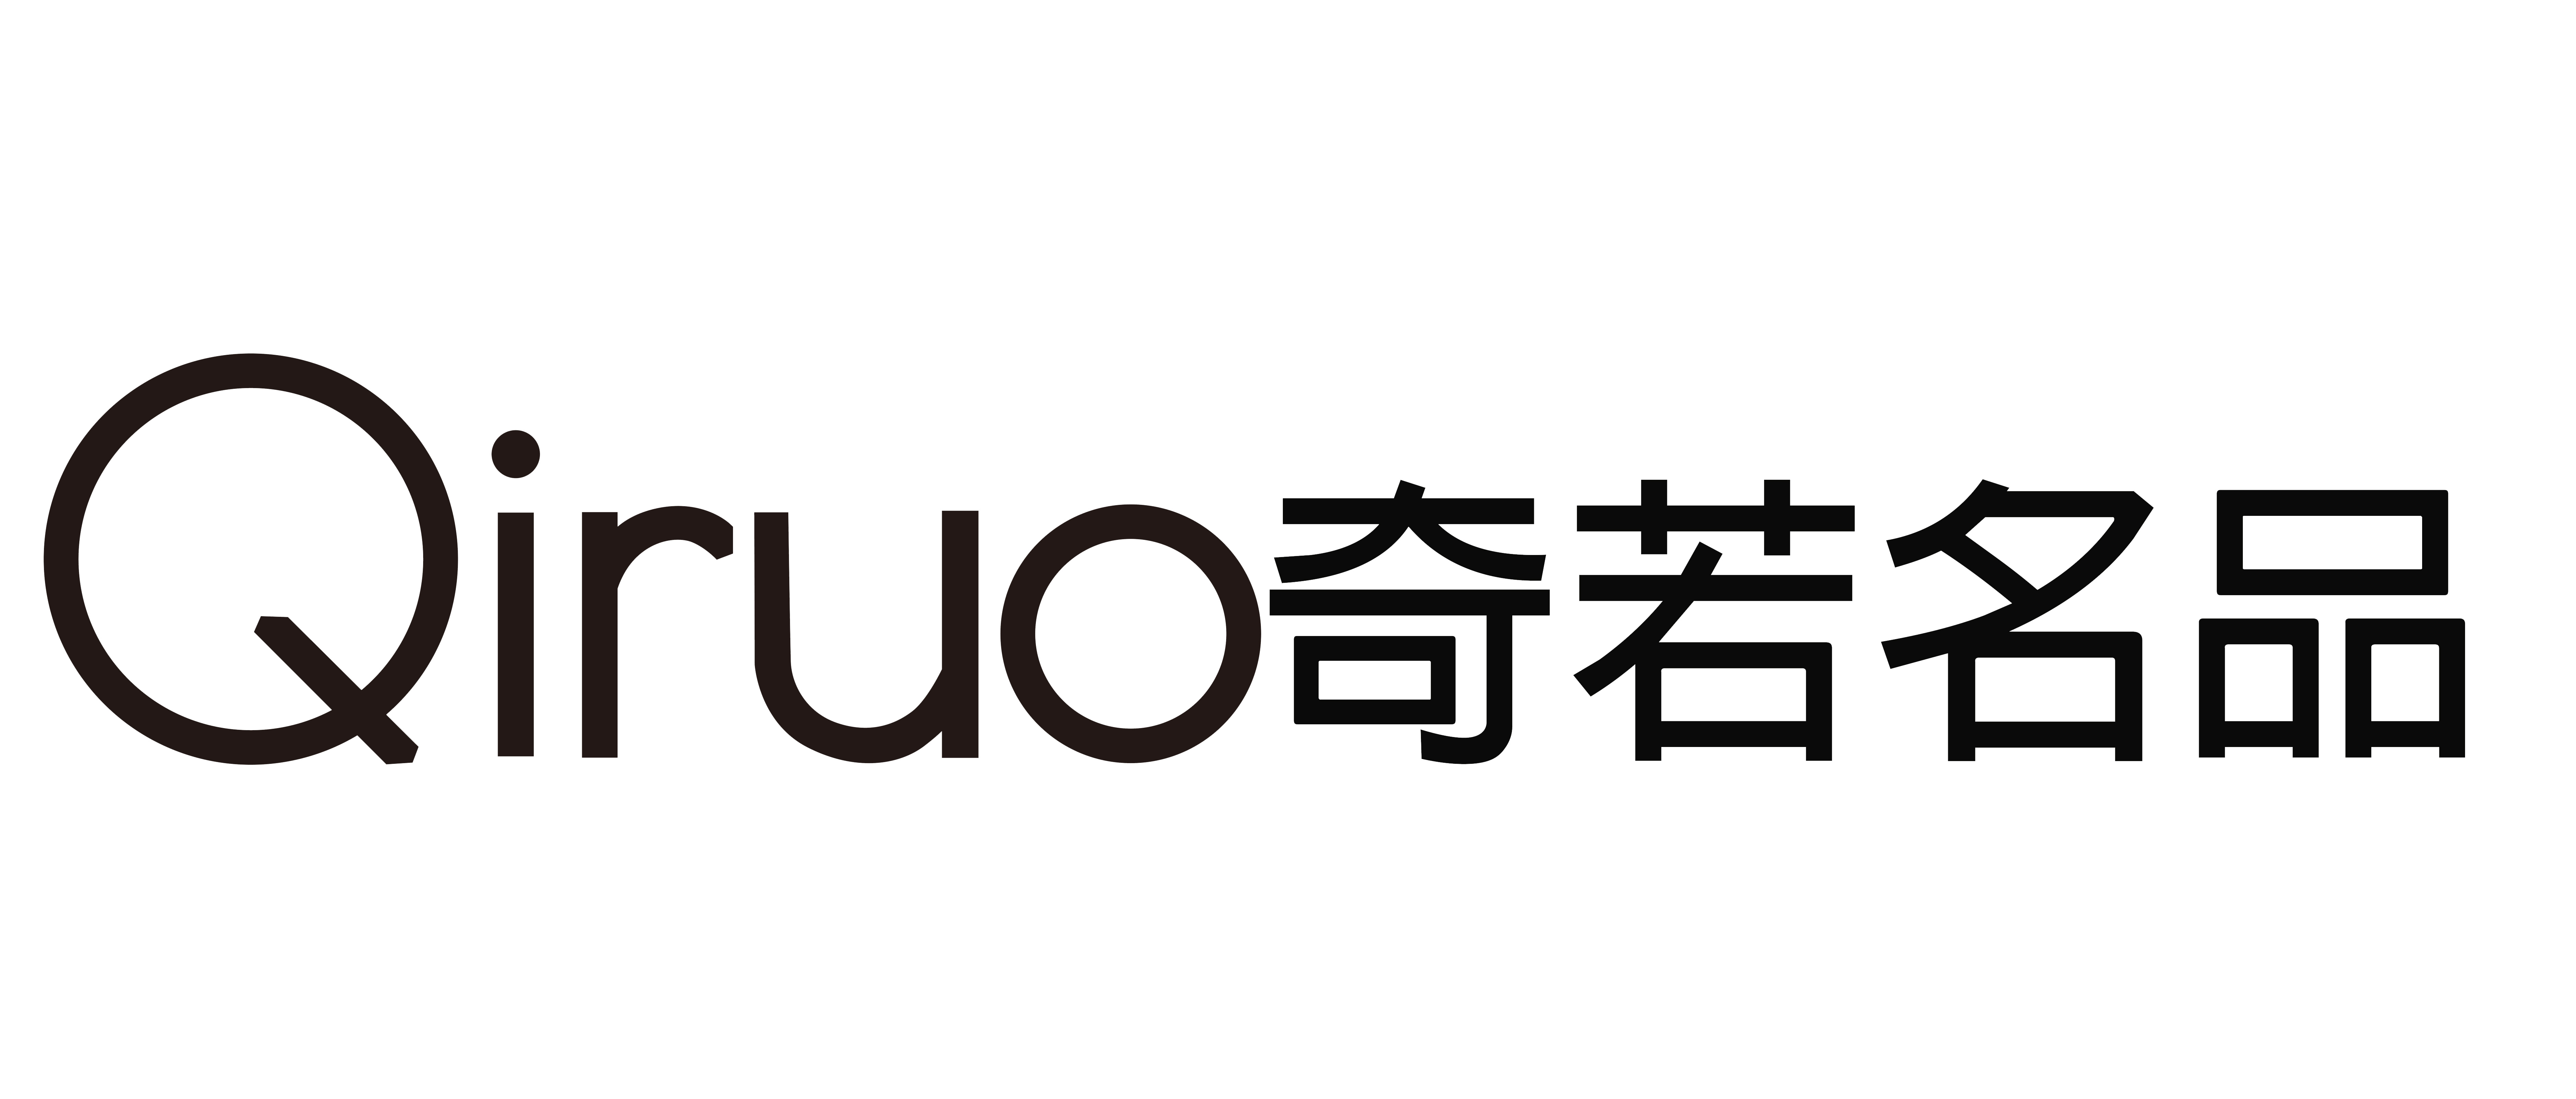 Qiruo logo